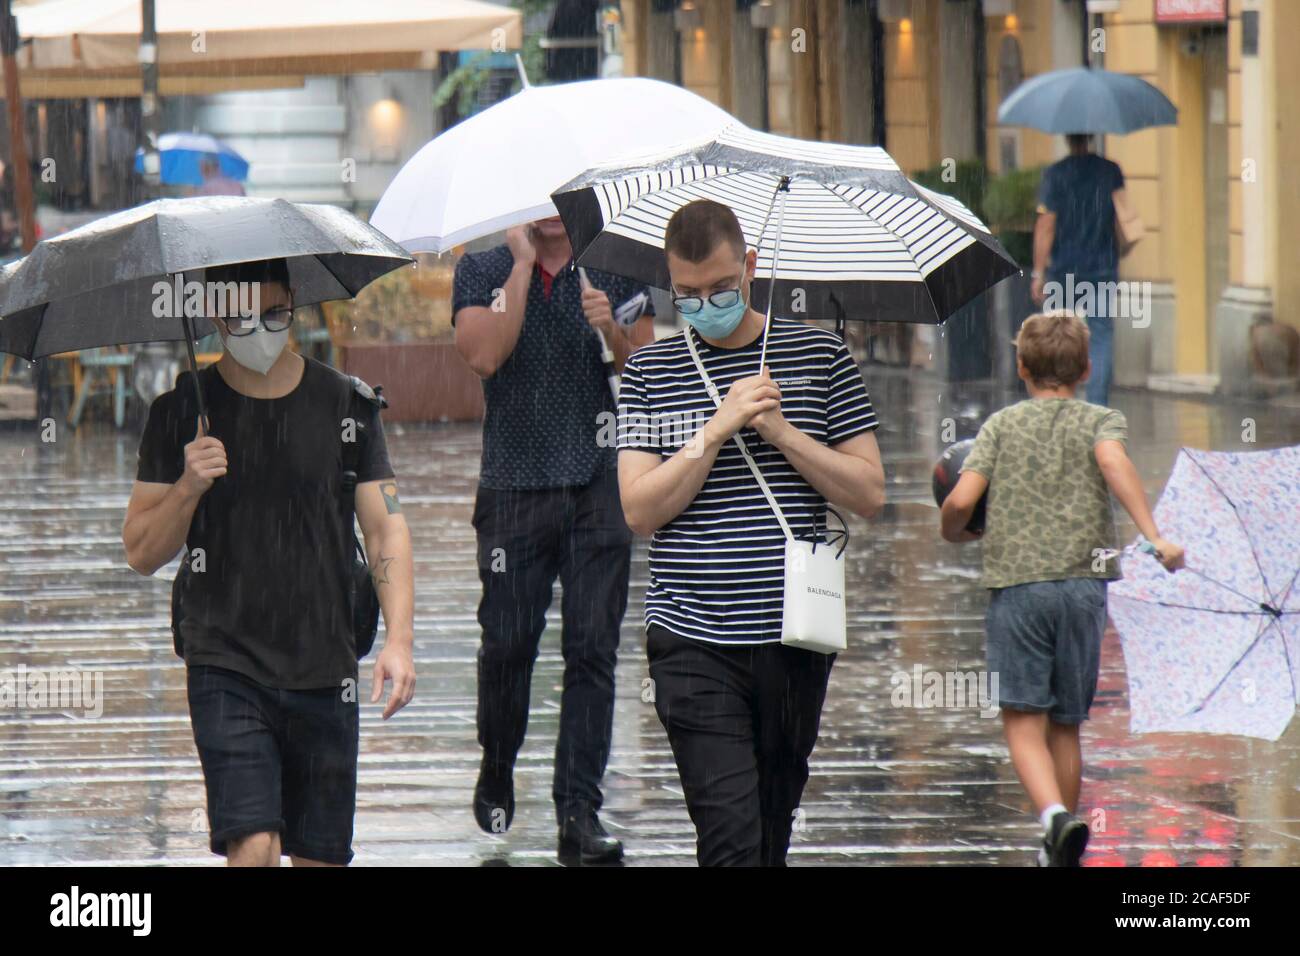 Belgrade, Serbie - 5 août 2020 : deux jeunes hommes portant des masques chirurgicaux et des lunettes marchant sous des parasols dans la foule à la rue piétonne Banque D'Images